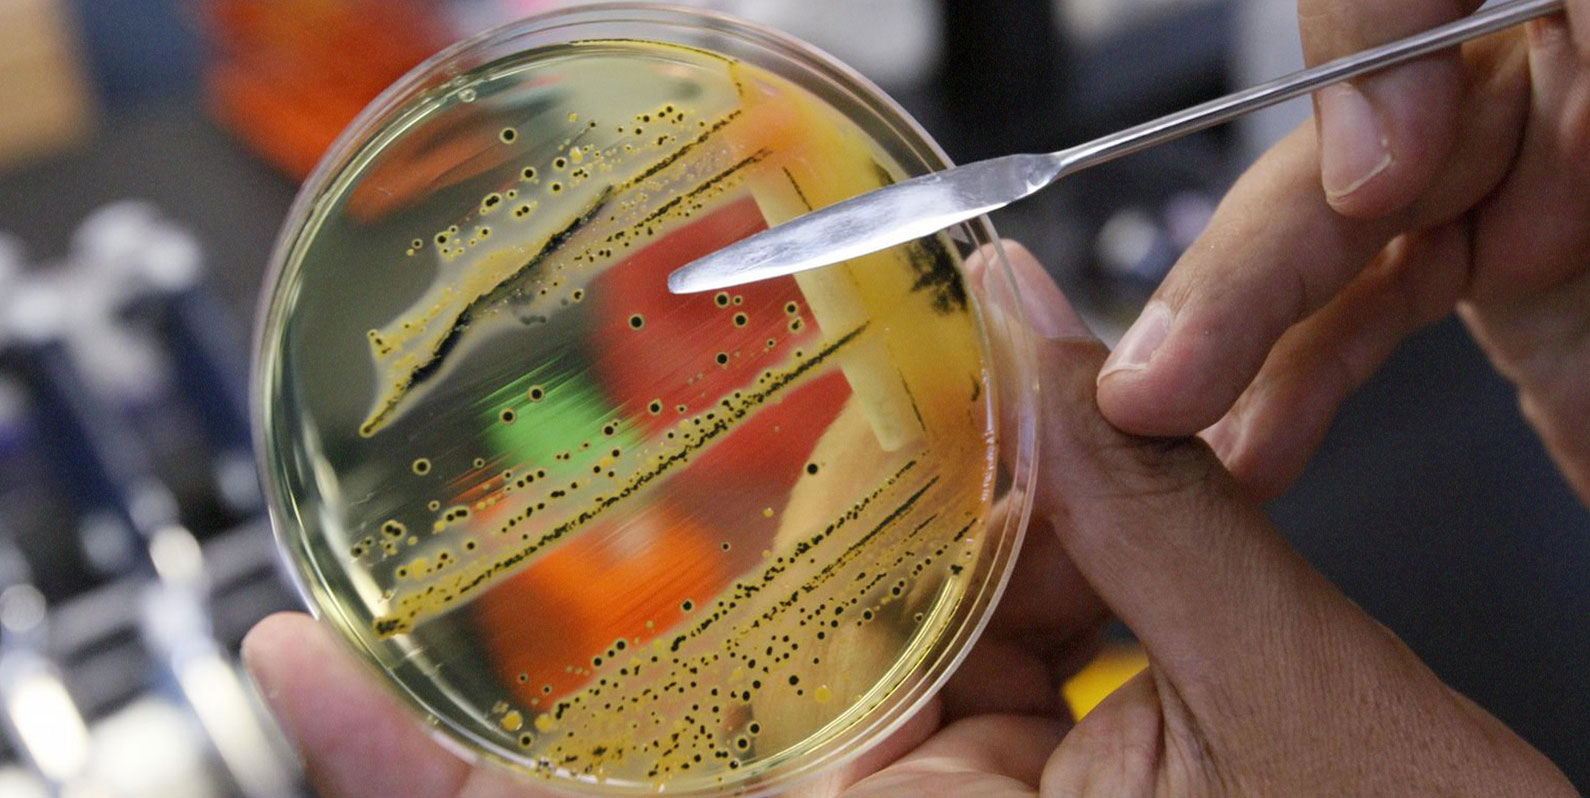 Superbactérias se alastram, e falta de dados preocupa cientistas